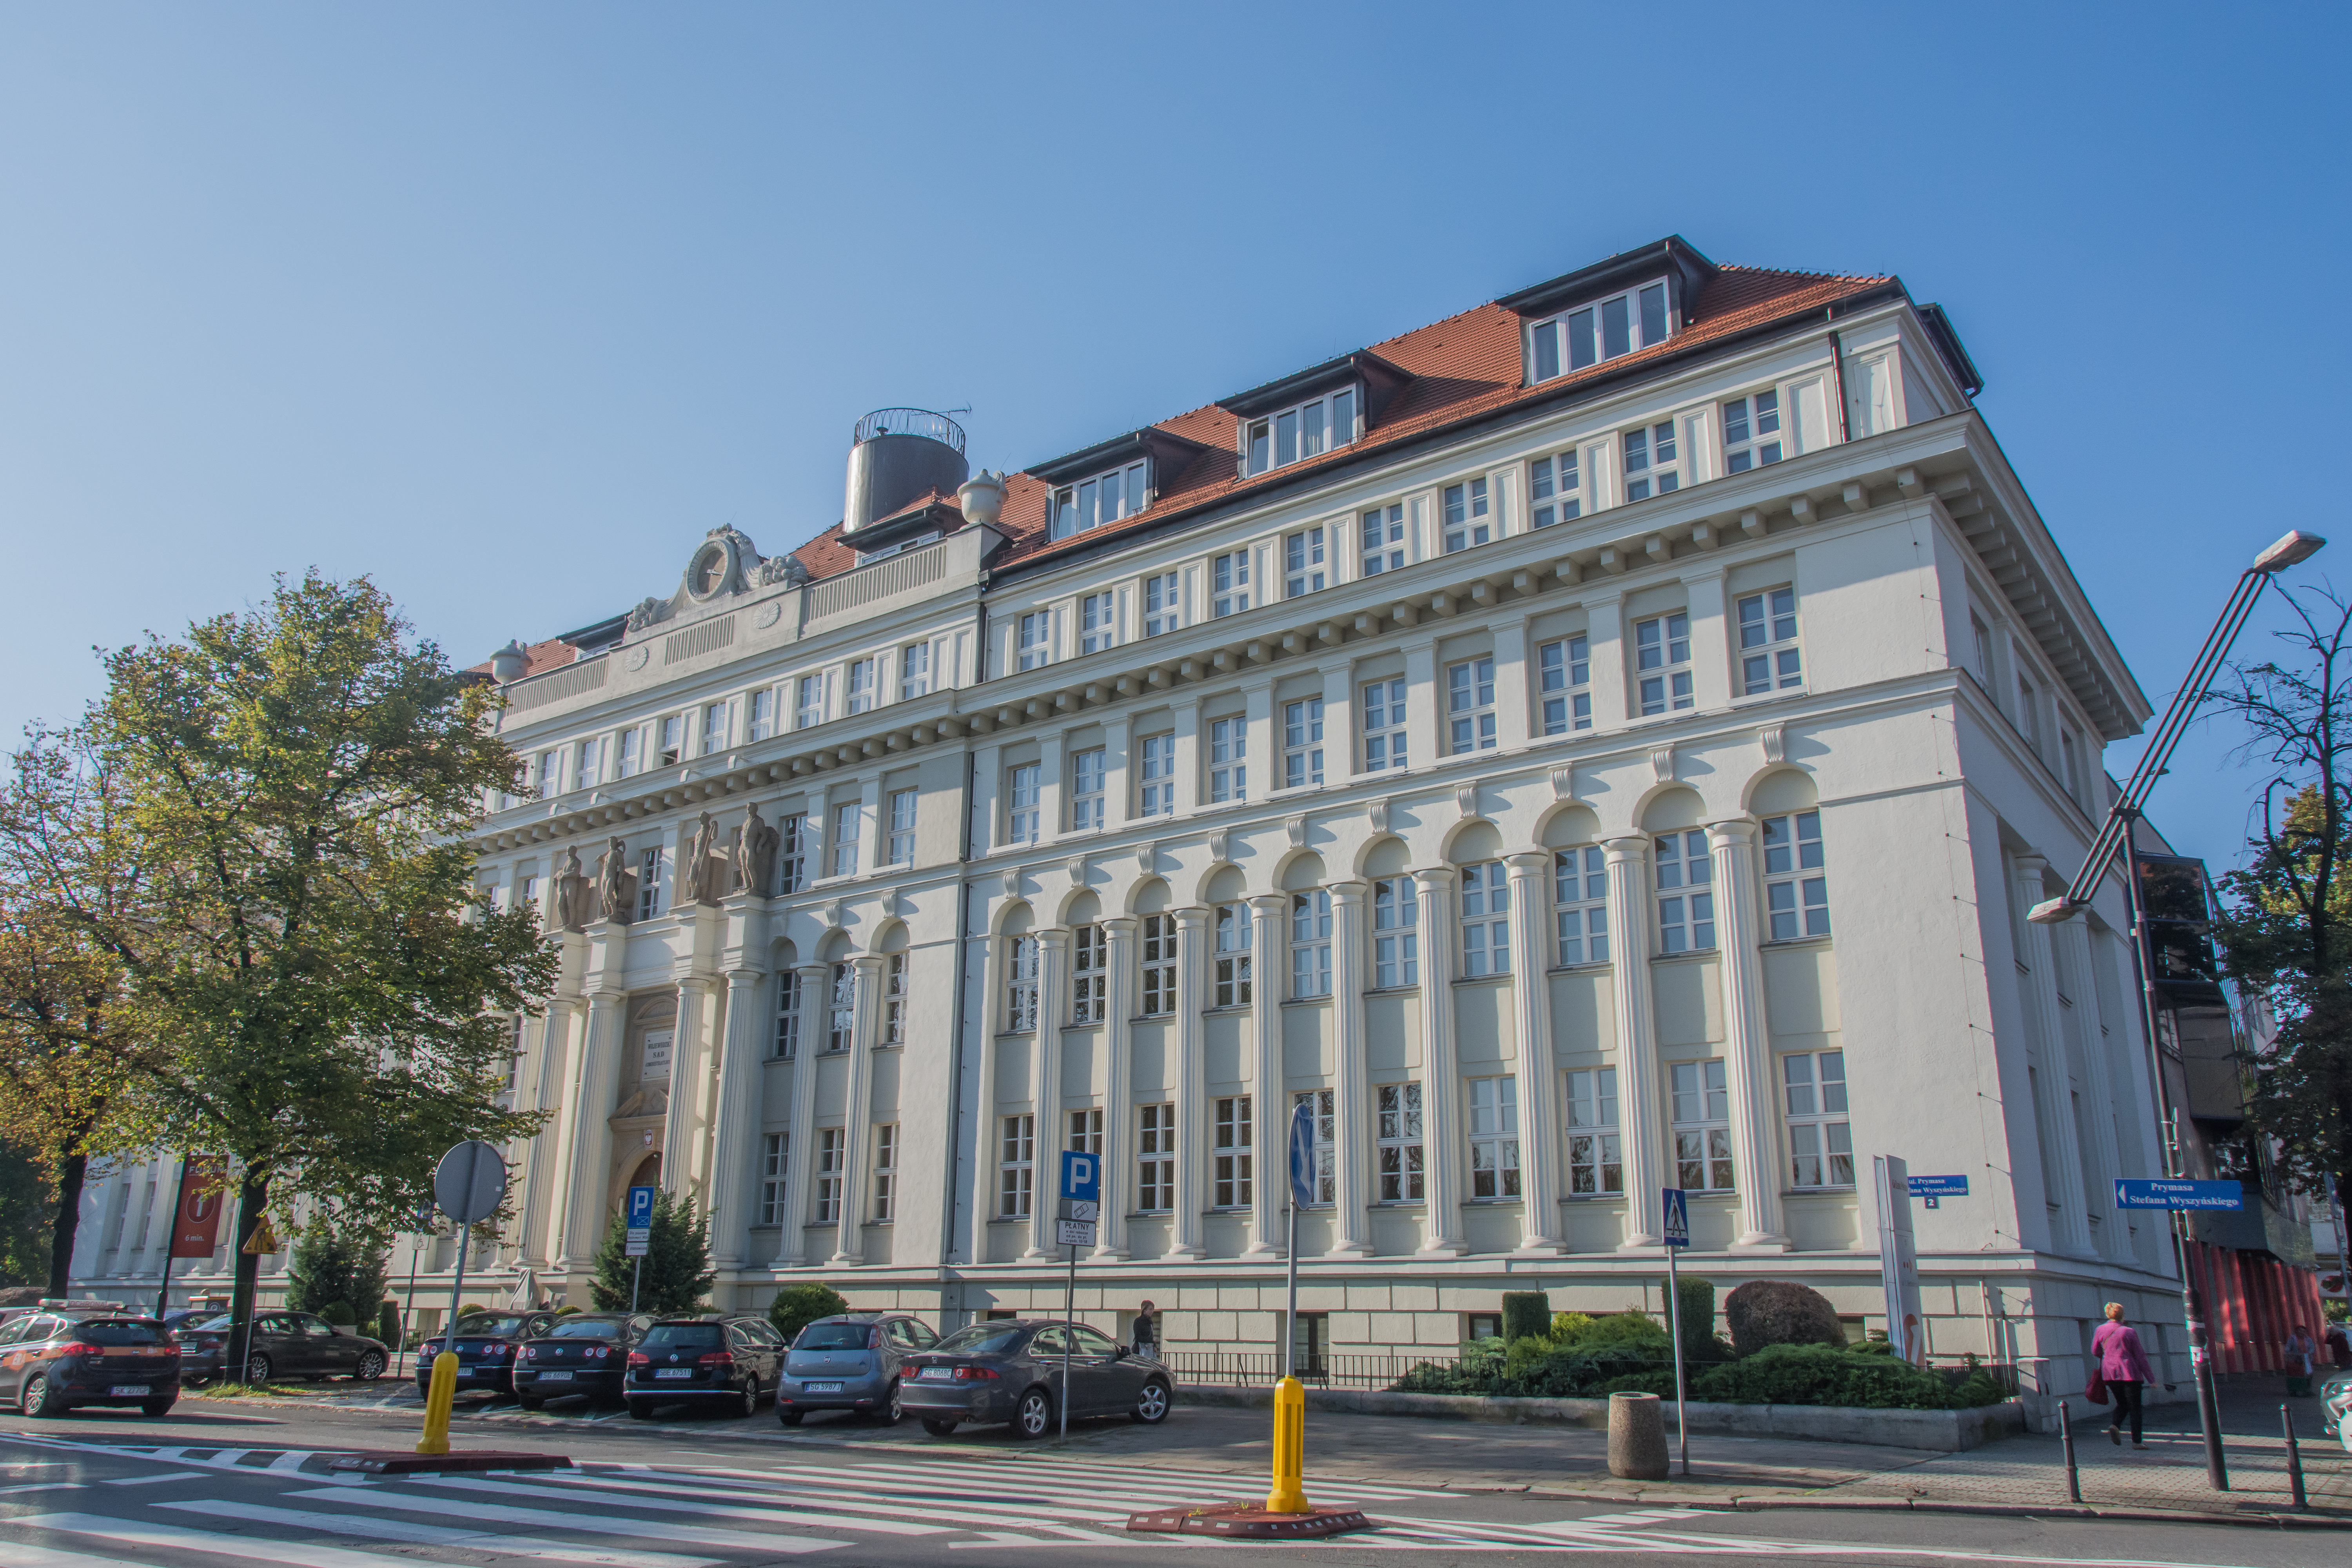 Provincial Administrative Court at Wyszyńskiego street